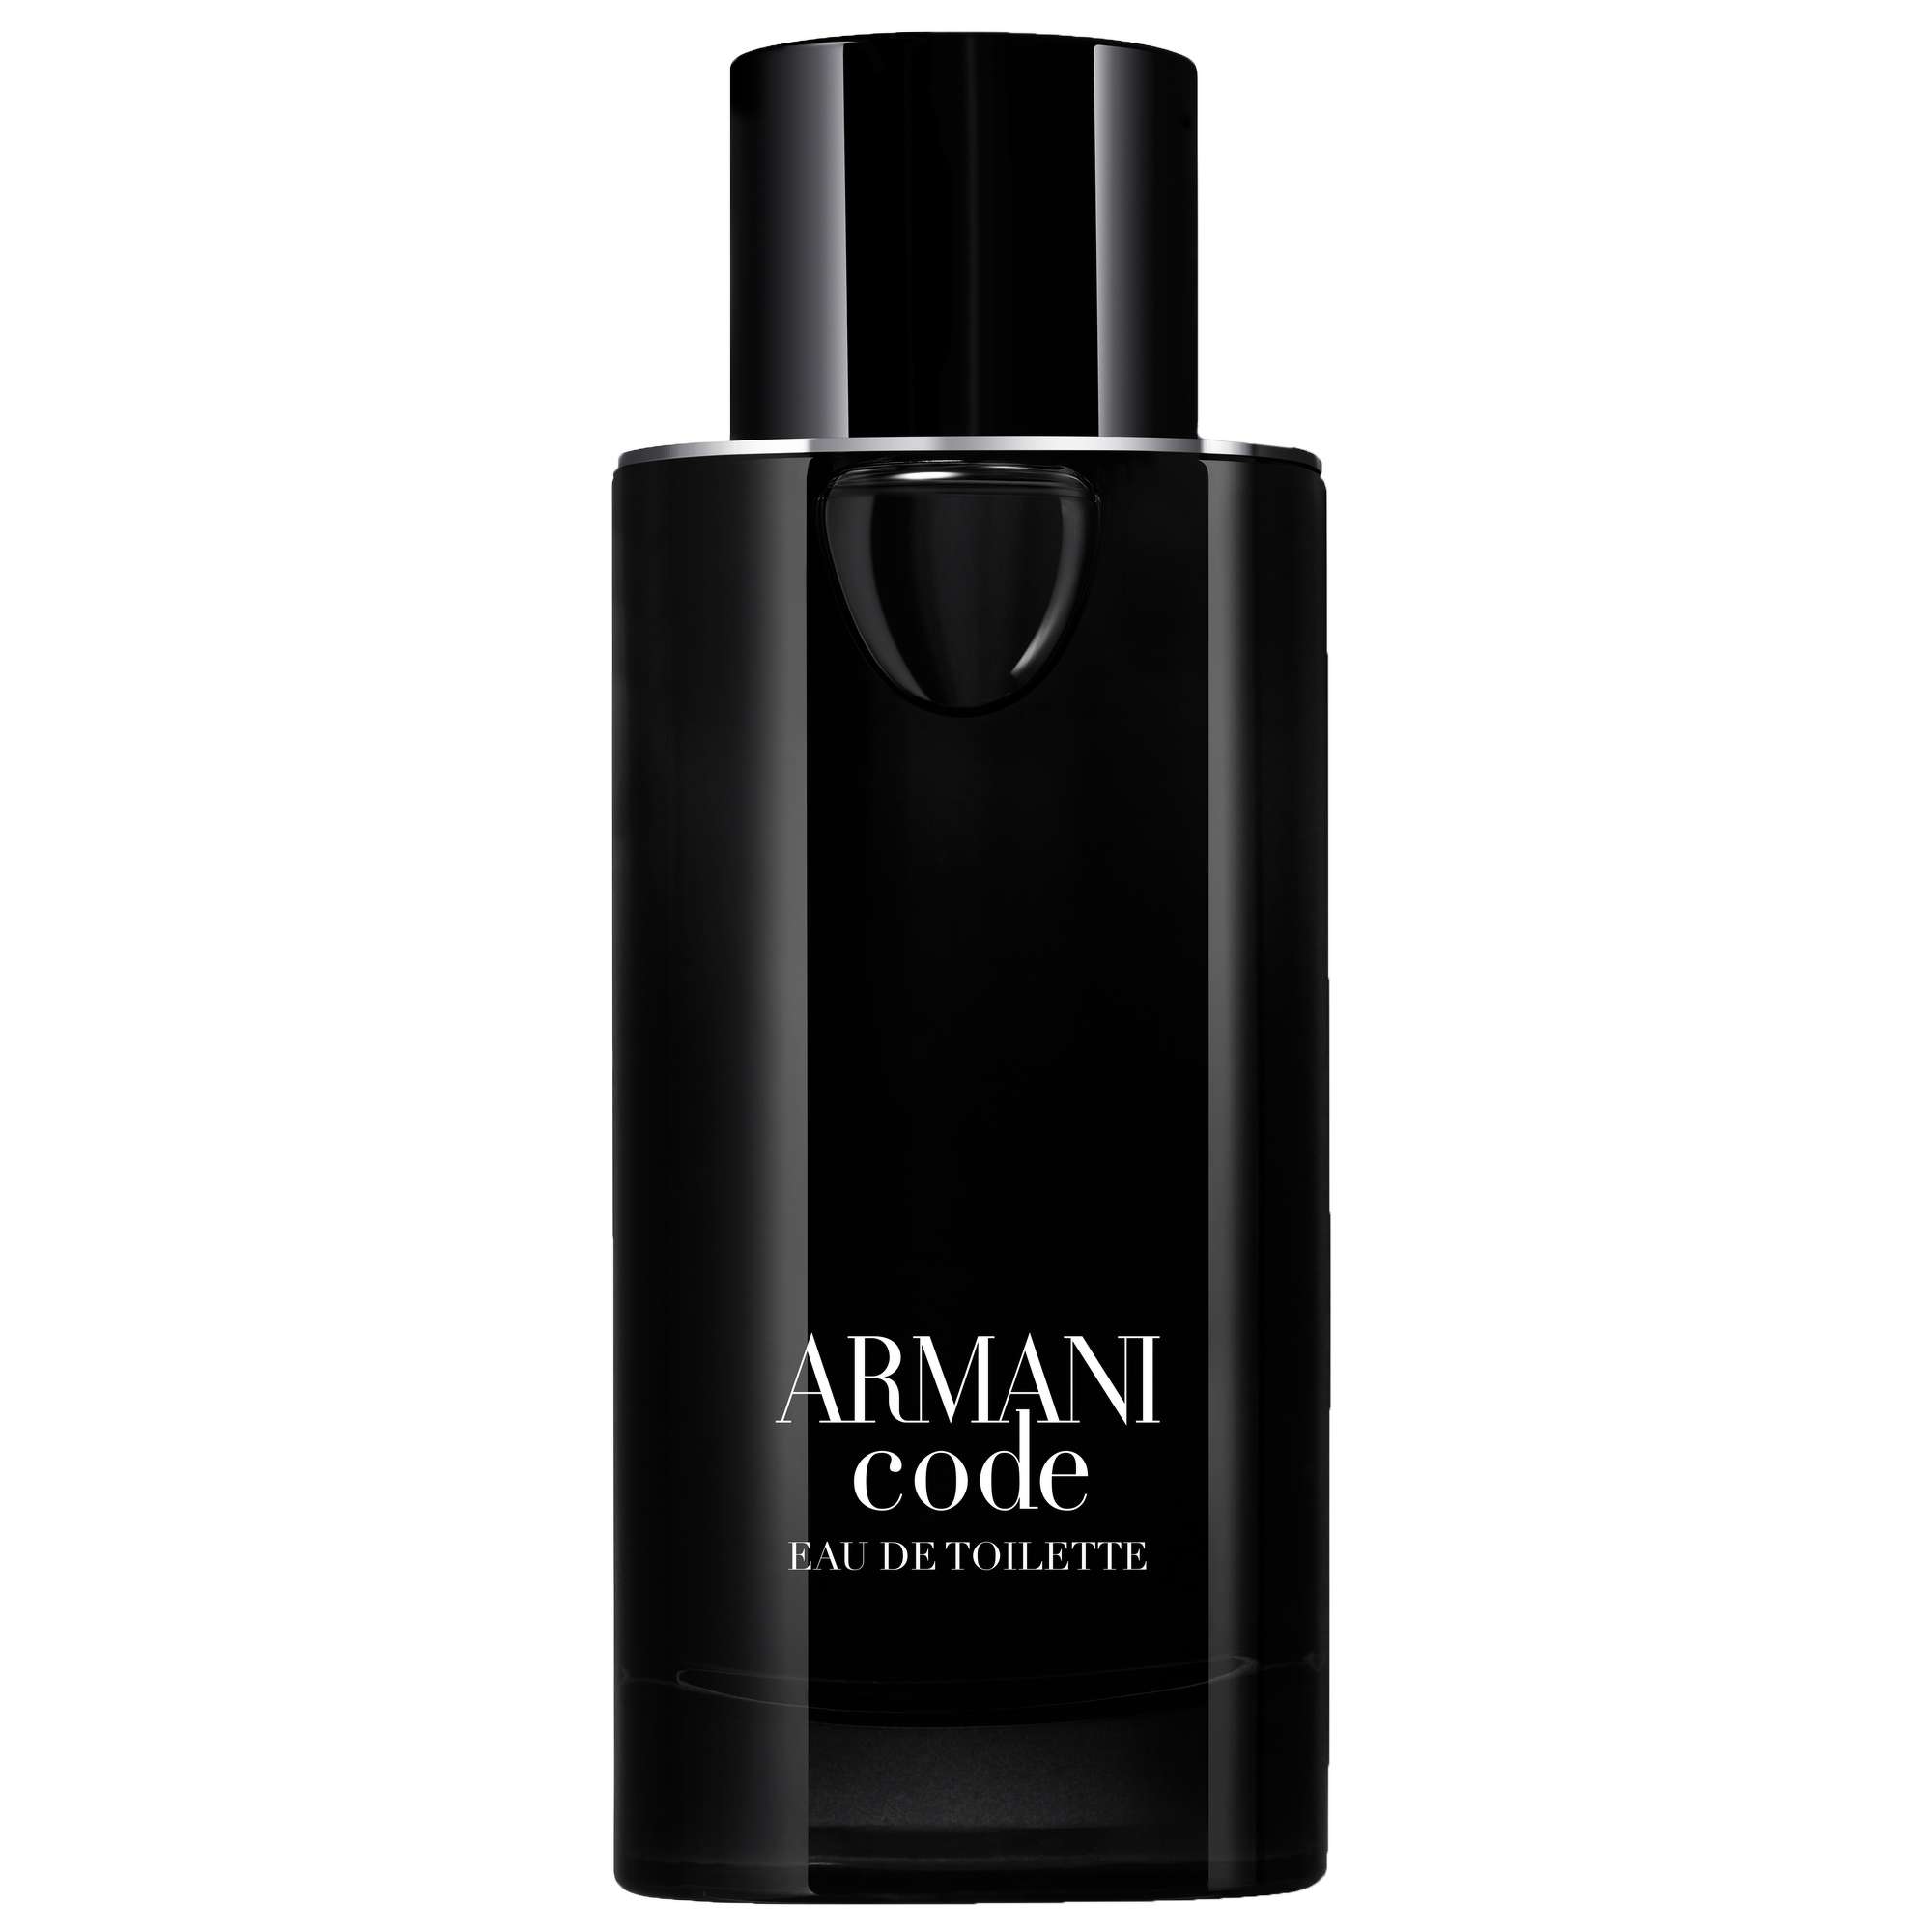 Photos - Women's Fragrance Armani Code Pour Homme Eau de Toilette Spray 125ml 